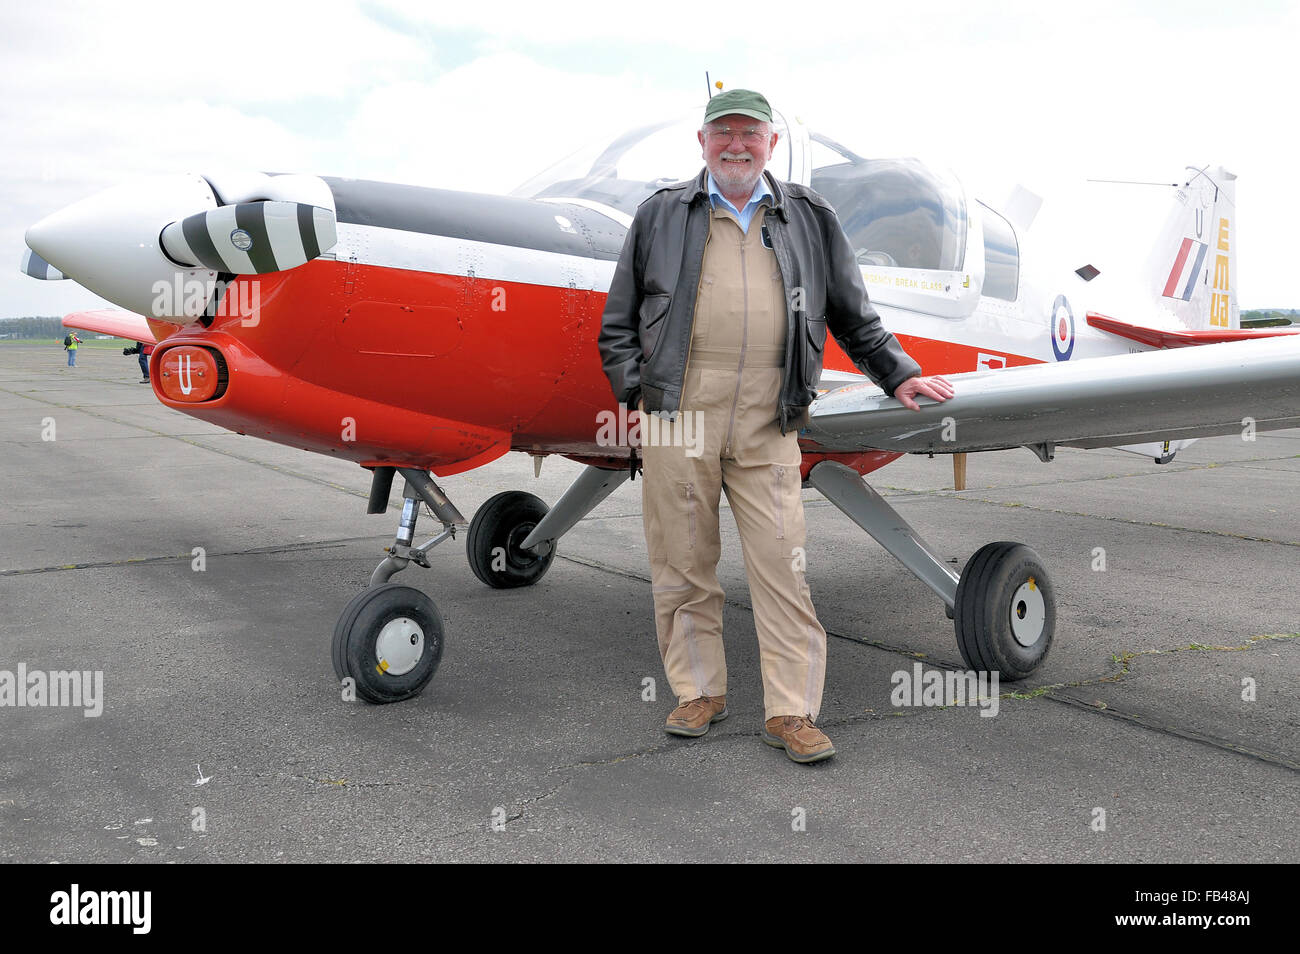 Doyen de la tige a été l'affichage de l'aviation civile depuis 1984 quand il a pris sa retraite de la RAF après 21 années de service militaire. Démonstration de vol directeur. FDD Banque D'Images